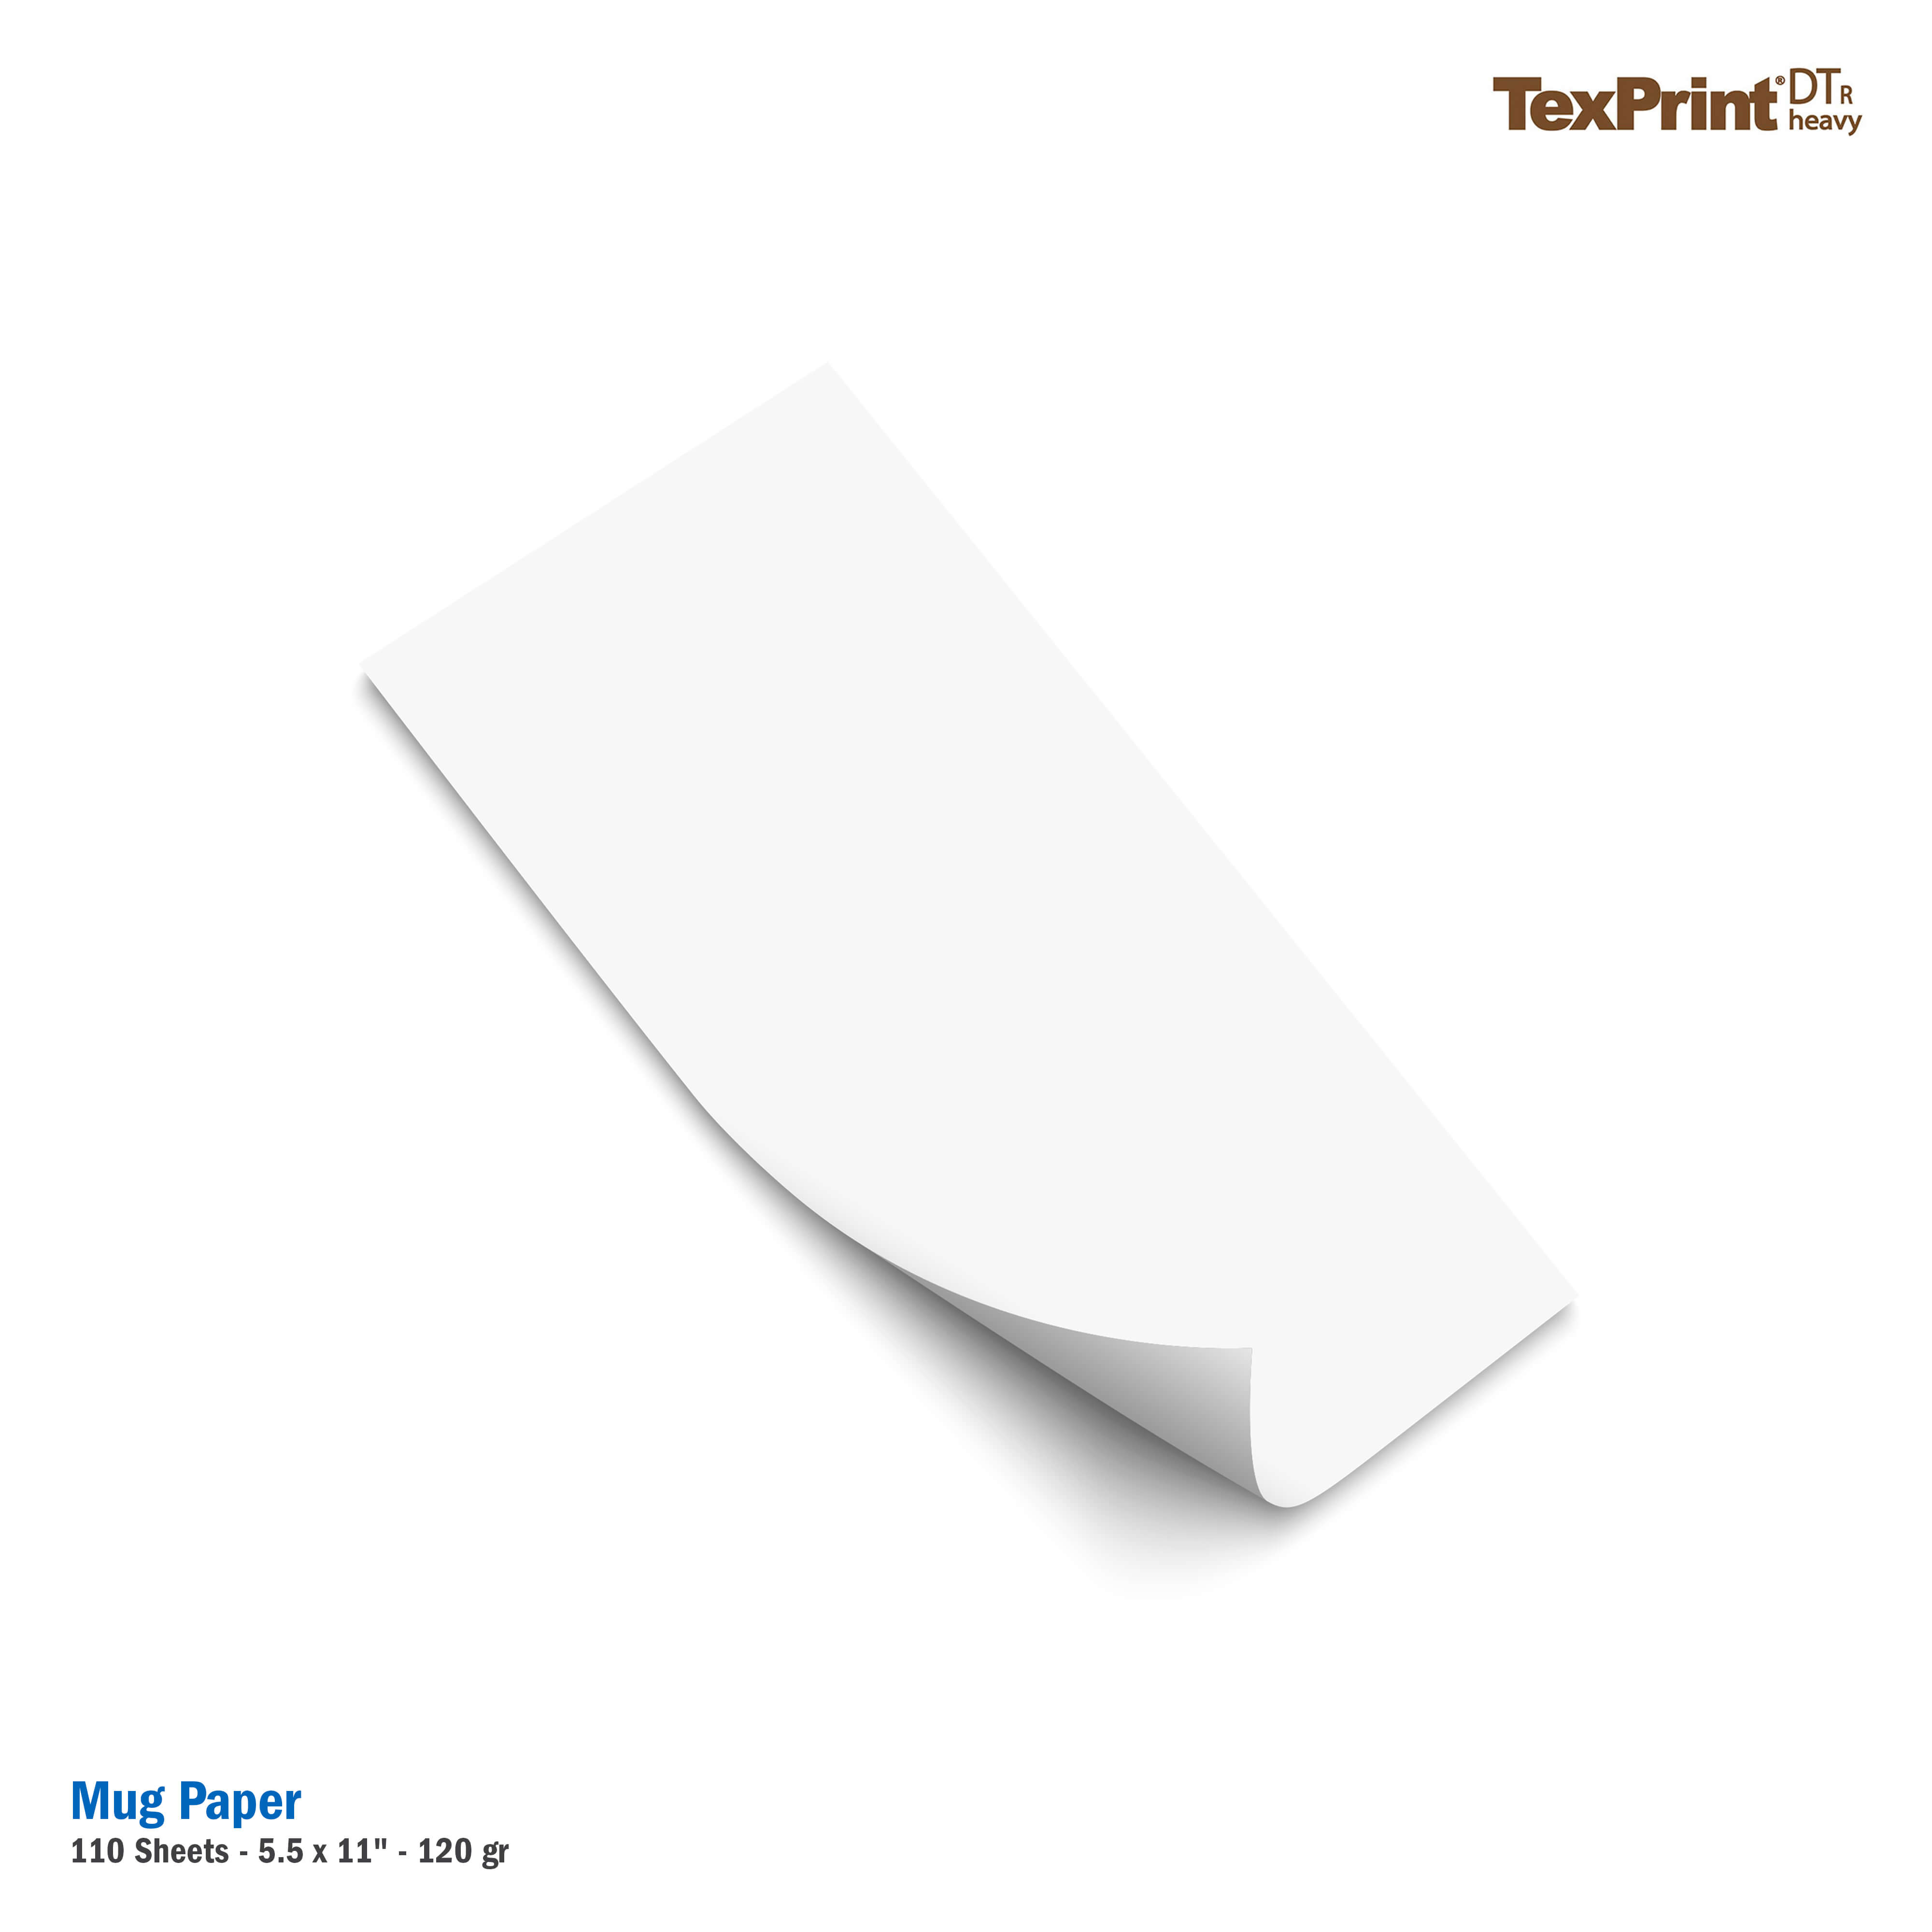 TexPrint DT/H Sublimation Mug Paper - 5.5 x 11"